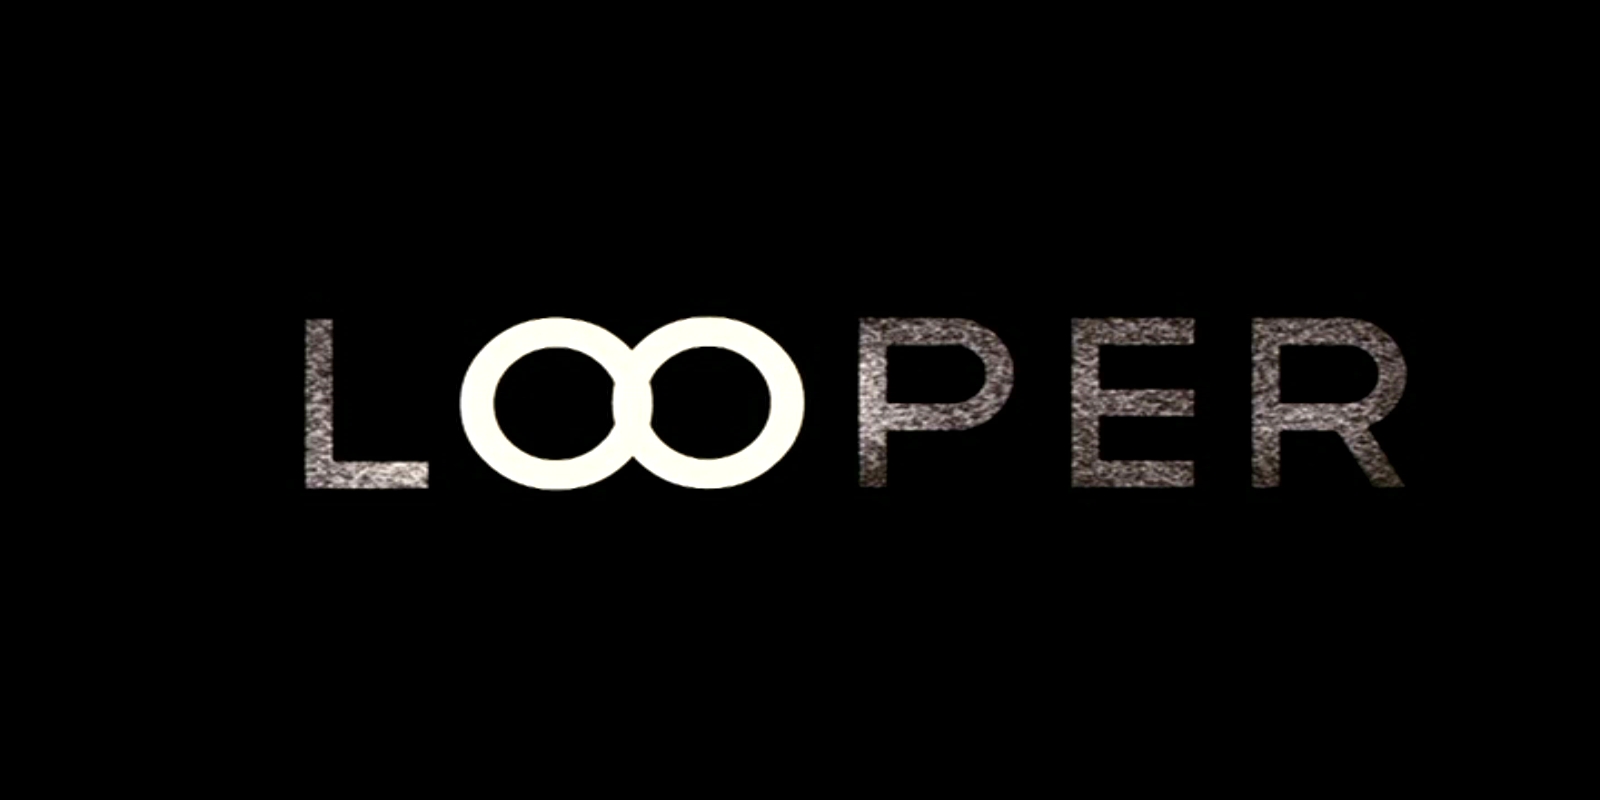 movie, looper